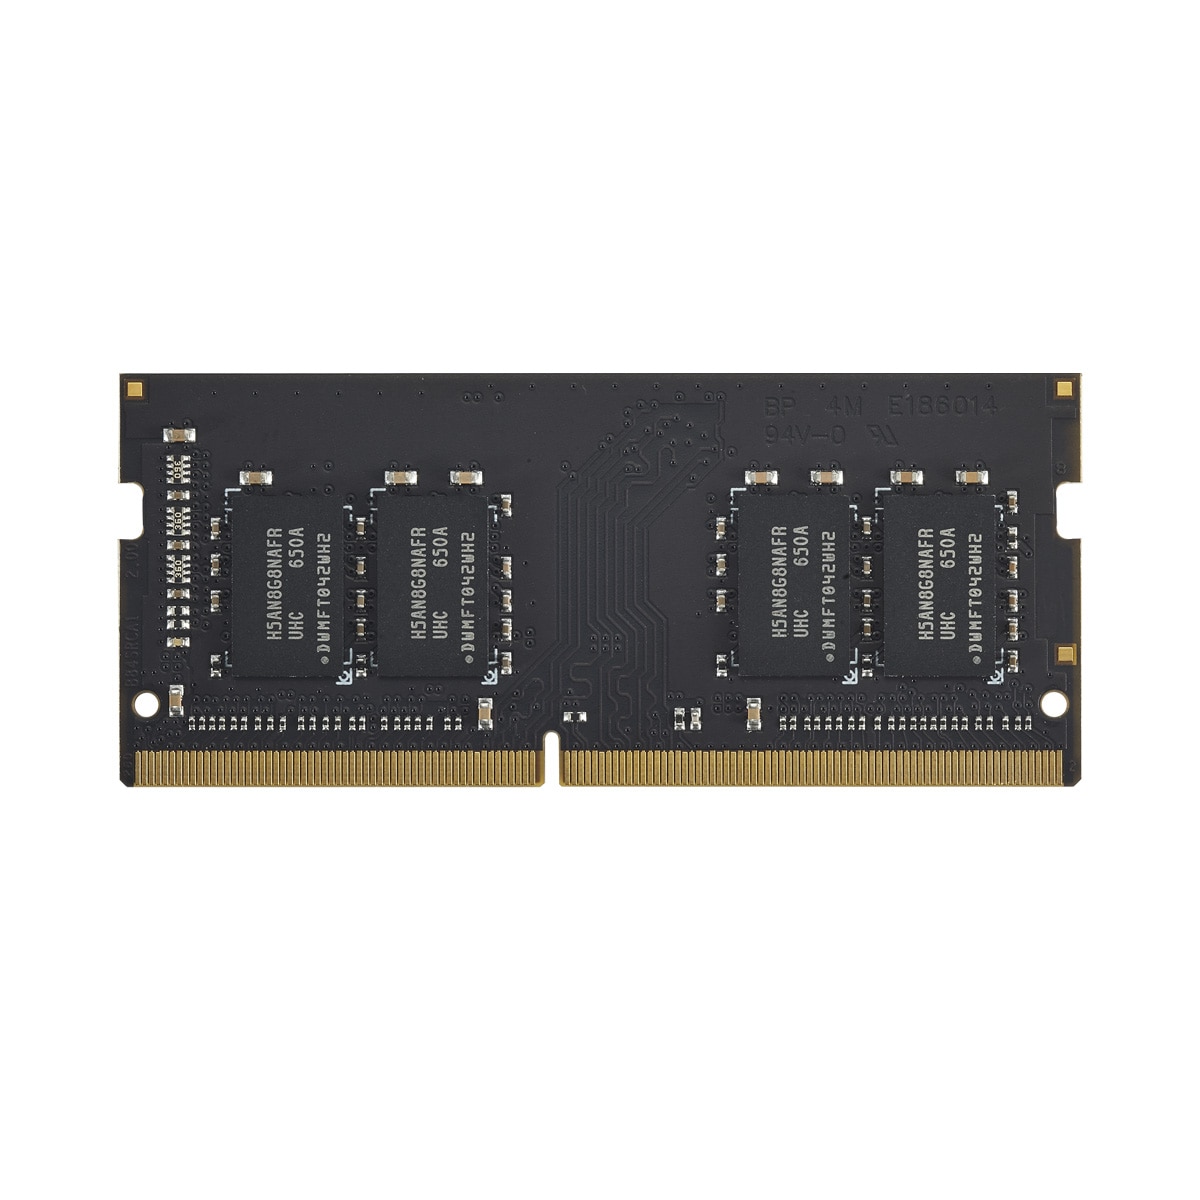 TERRAMASTER 8G DDR4 RAM SO-DIMM, F2-423, F4-423, T6-423, T9-423, T12-423, U4-423, U8-423, U12-423